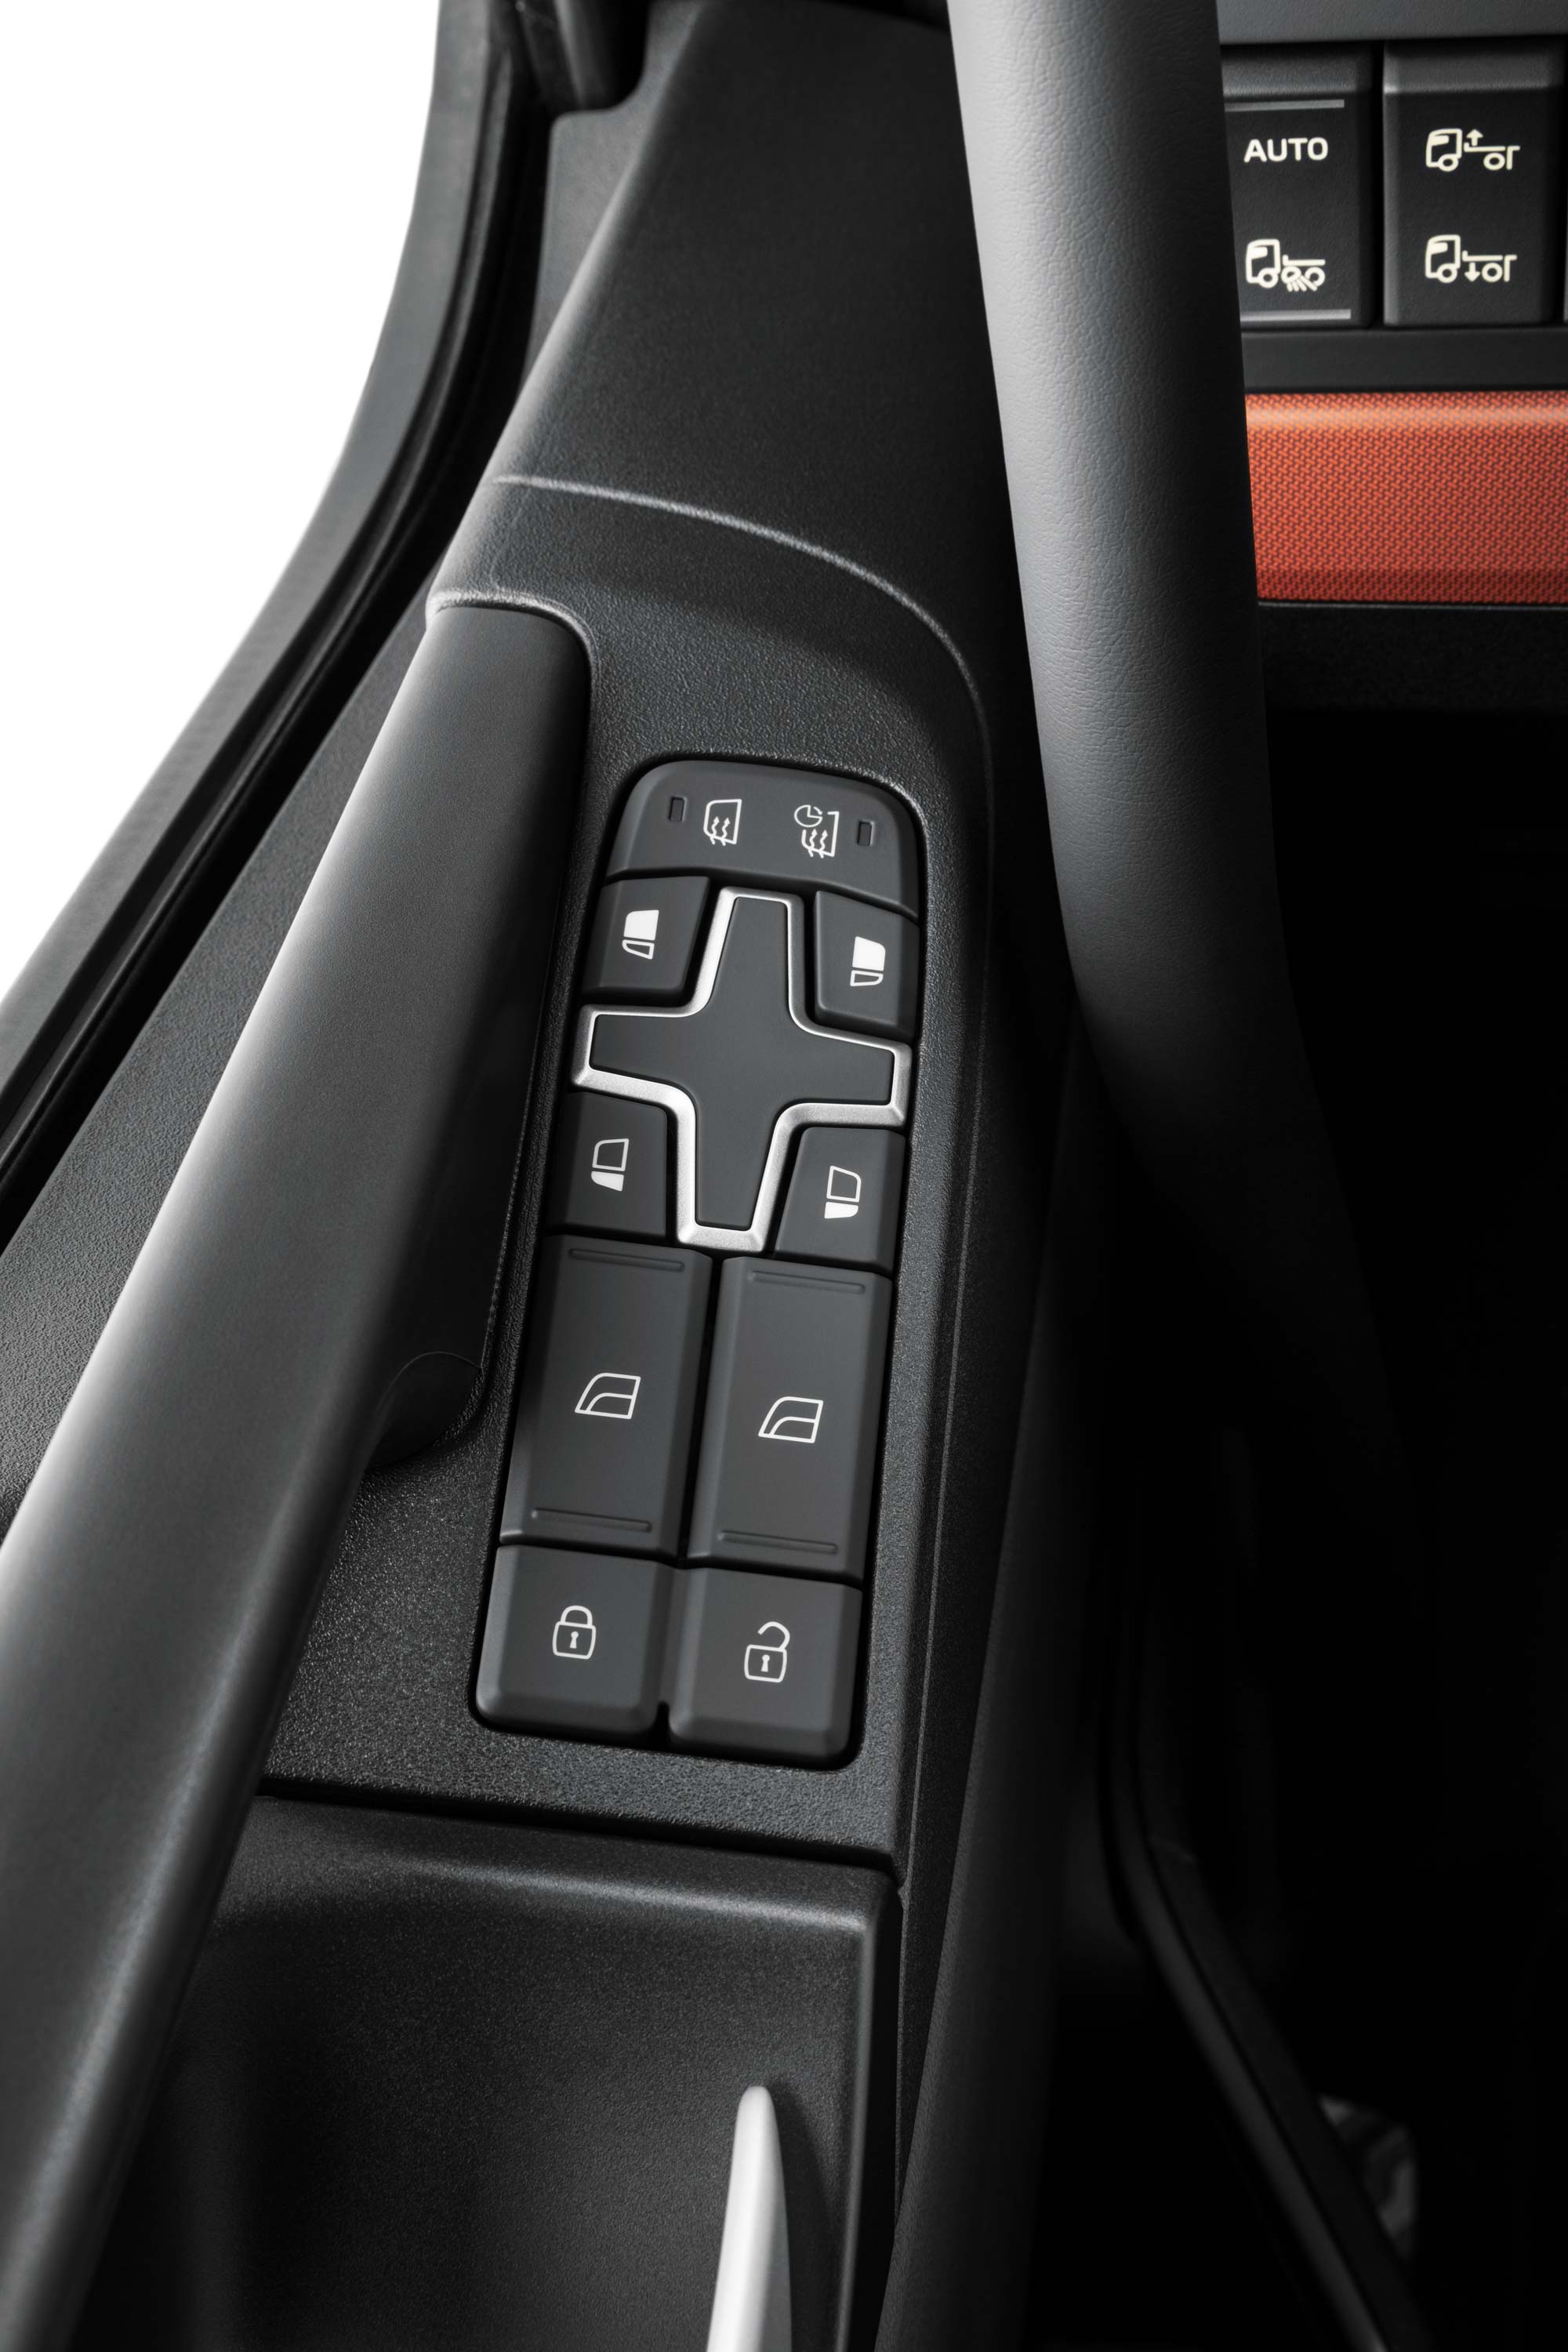 Volvo FH16 sisemusse integreeritud juhtnupud hõlbustavad juurdepääsu.